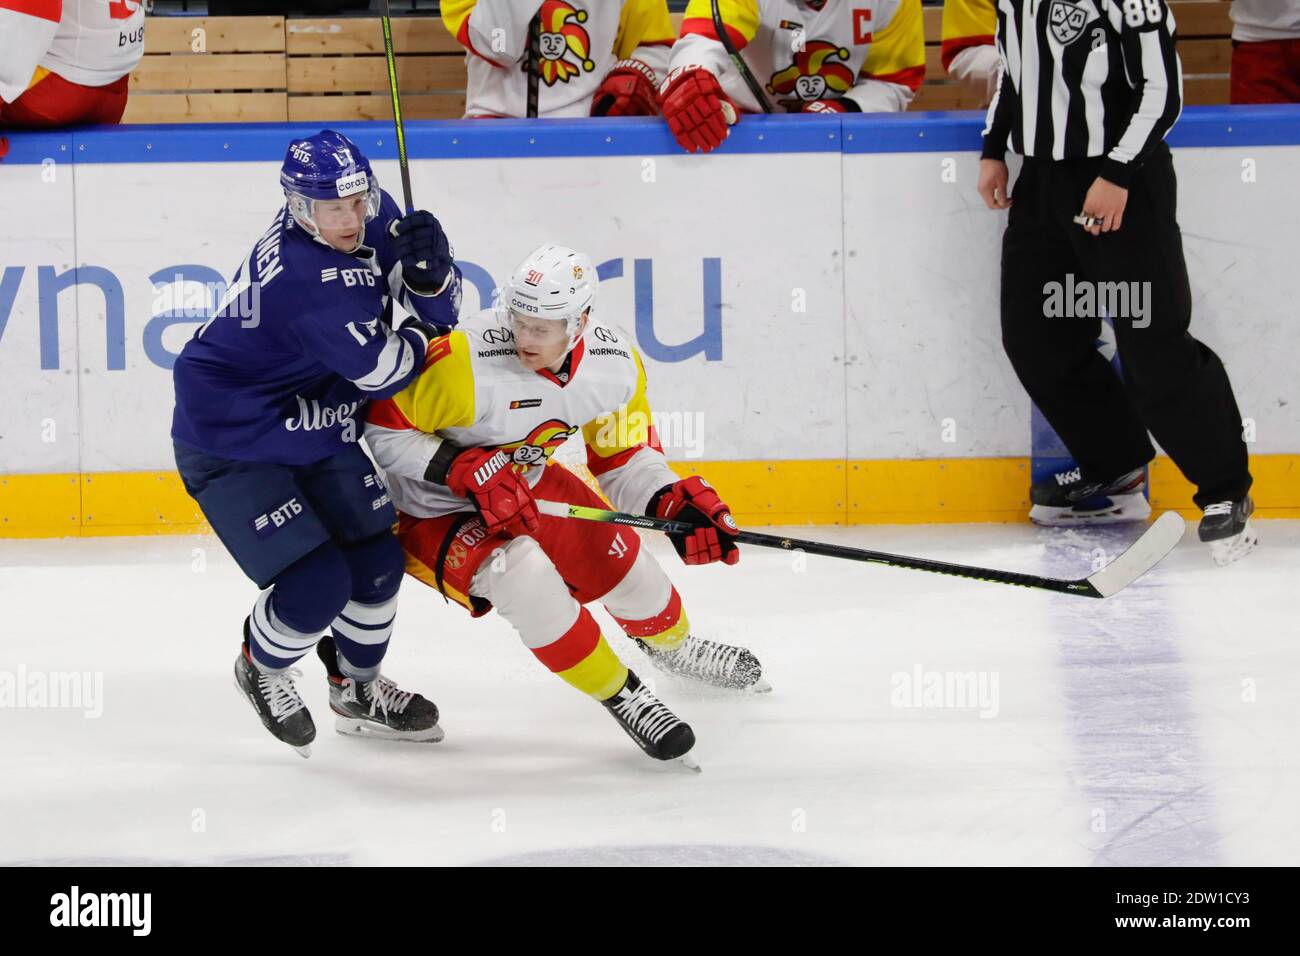 2020 décembre 22 - Moscou, Russie - KHL Hockey sur glace - Dynamo Moscou vs Jokerit Helsinki. Banque D'Images